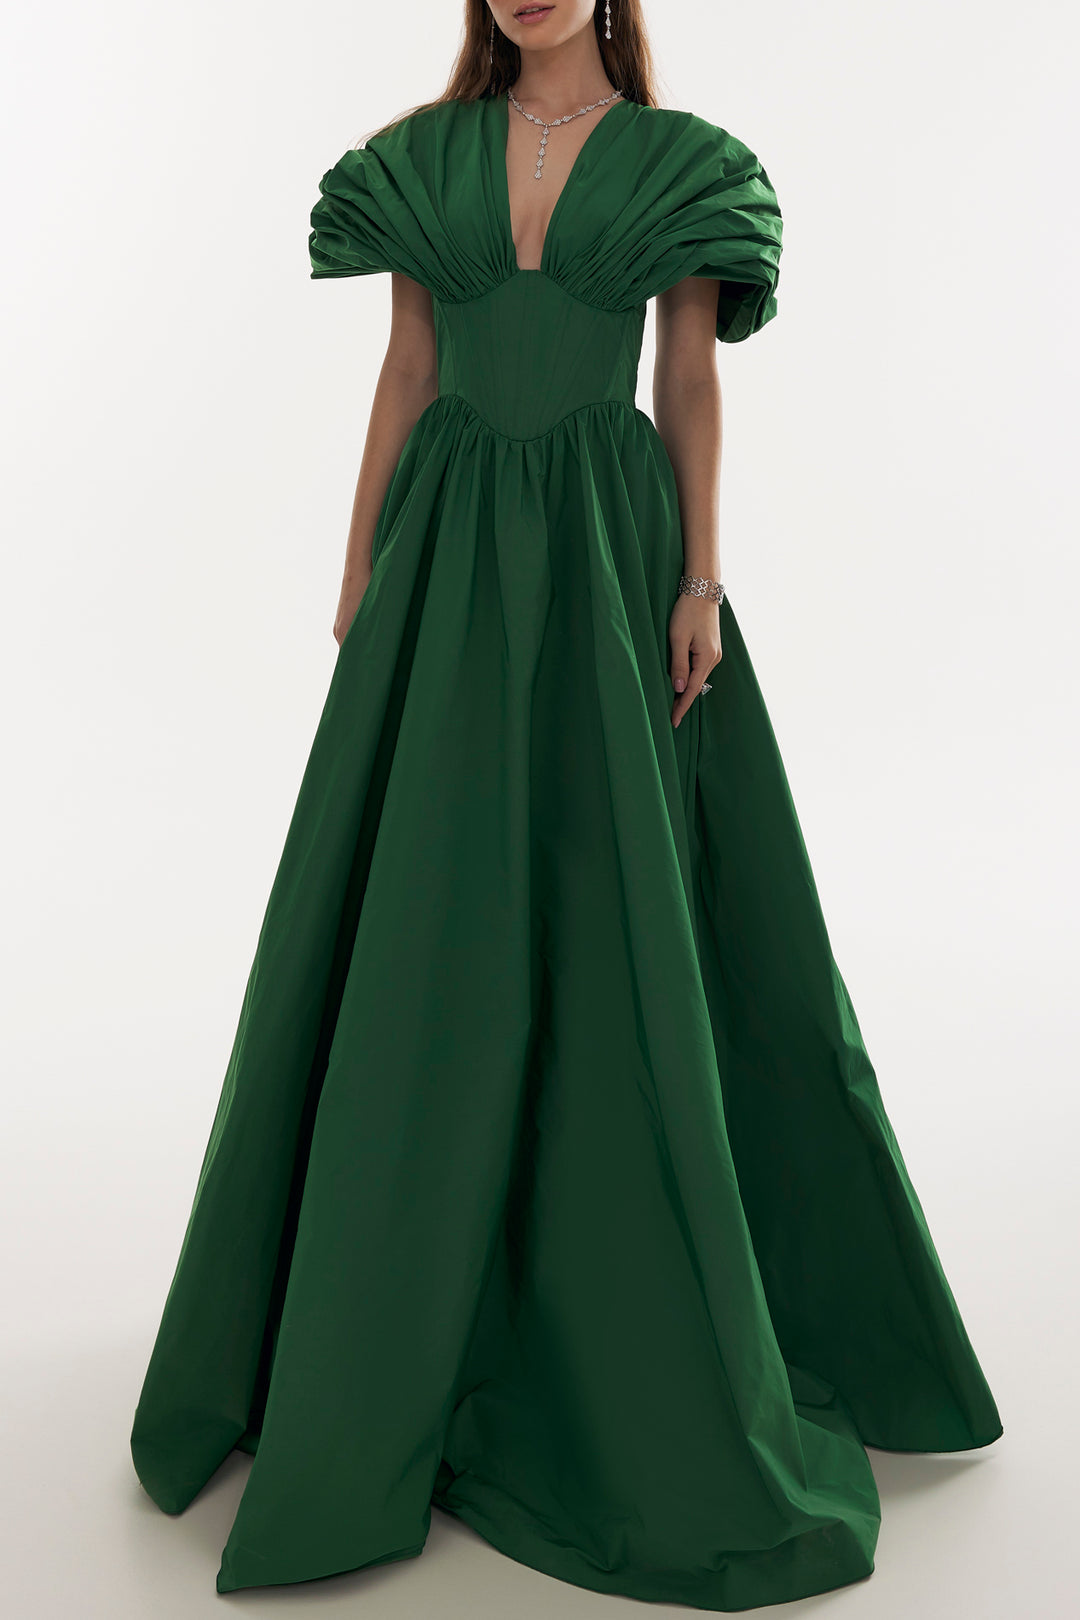 Ezra Dark Green Taffeta Long Dress